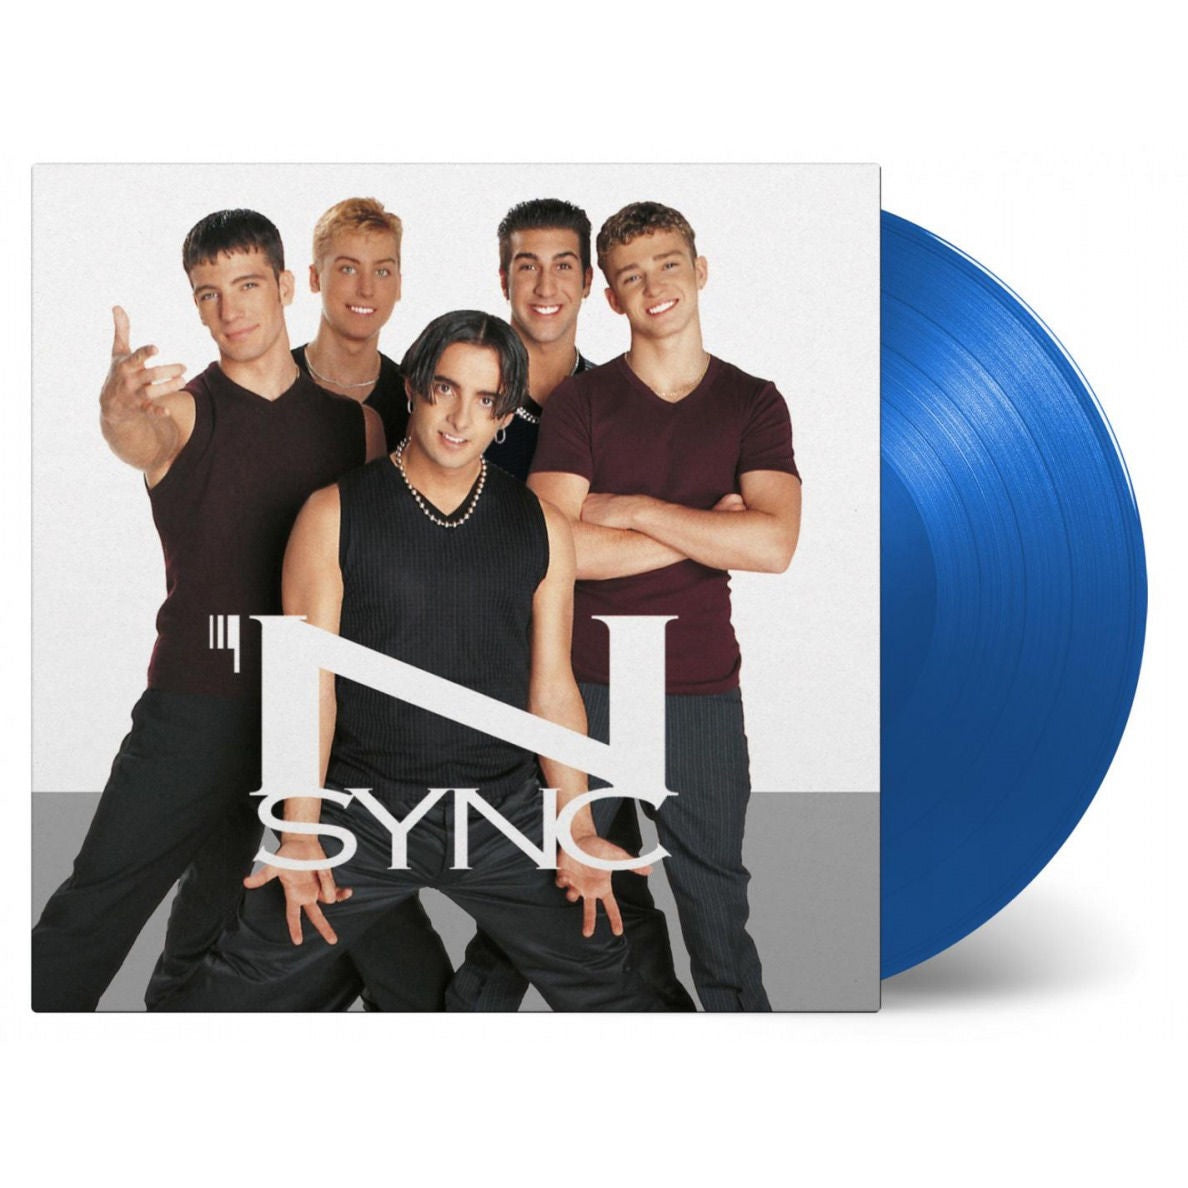 NEW - Nsync, Nsync Blue Vinyl Limited Edition Vinyl